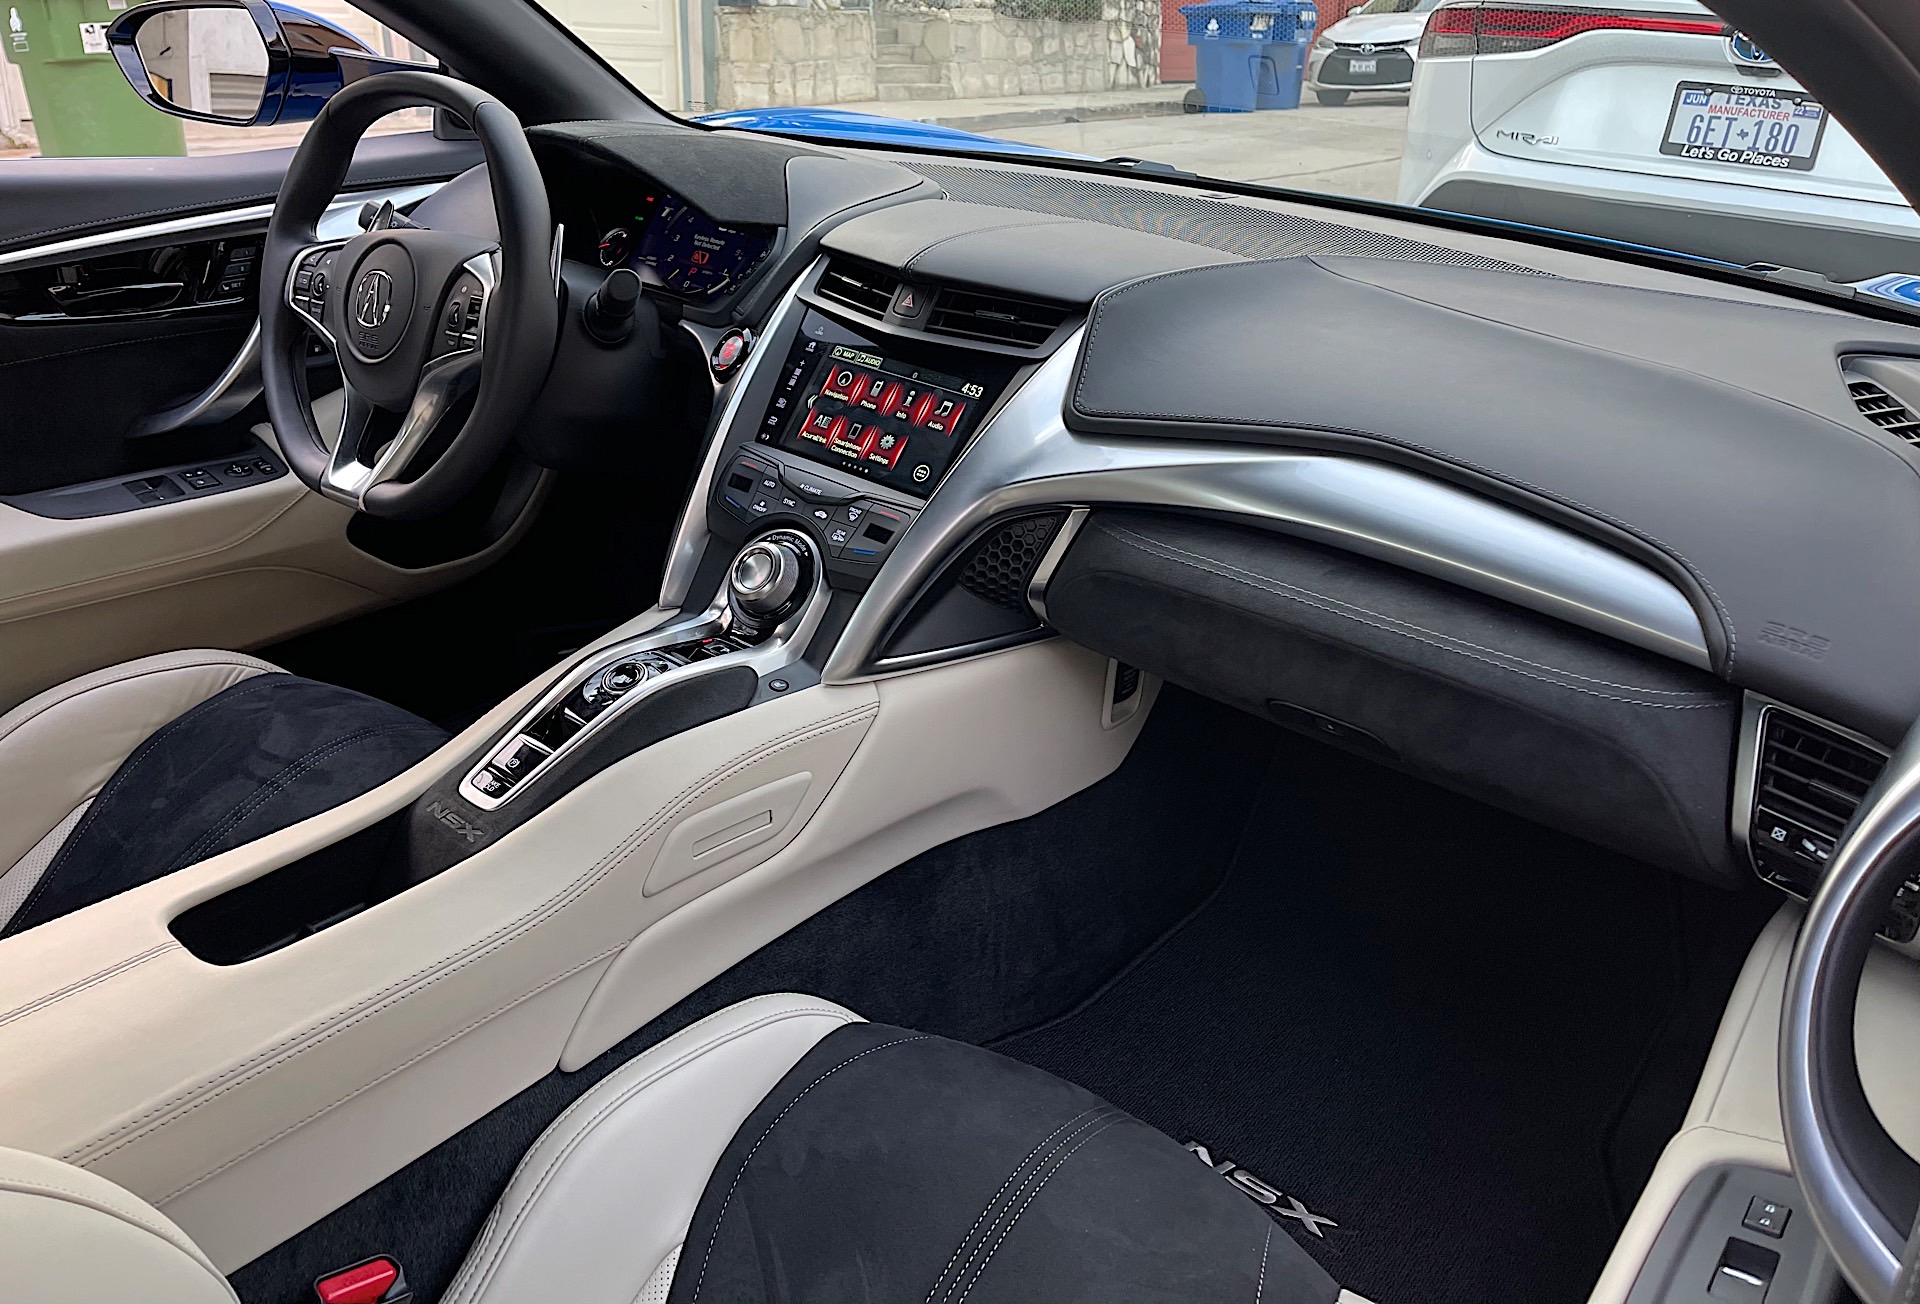 2021 Acura NSX interior 02 1